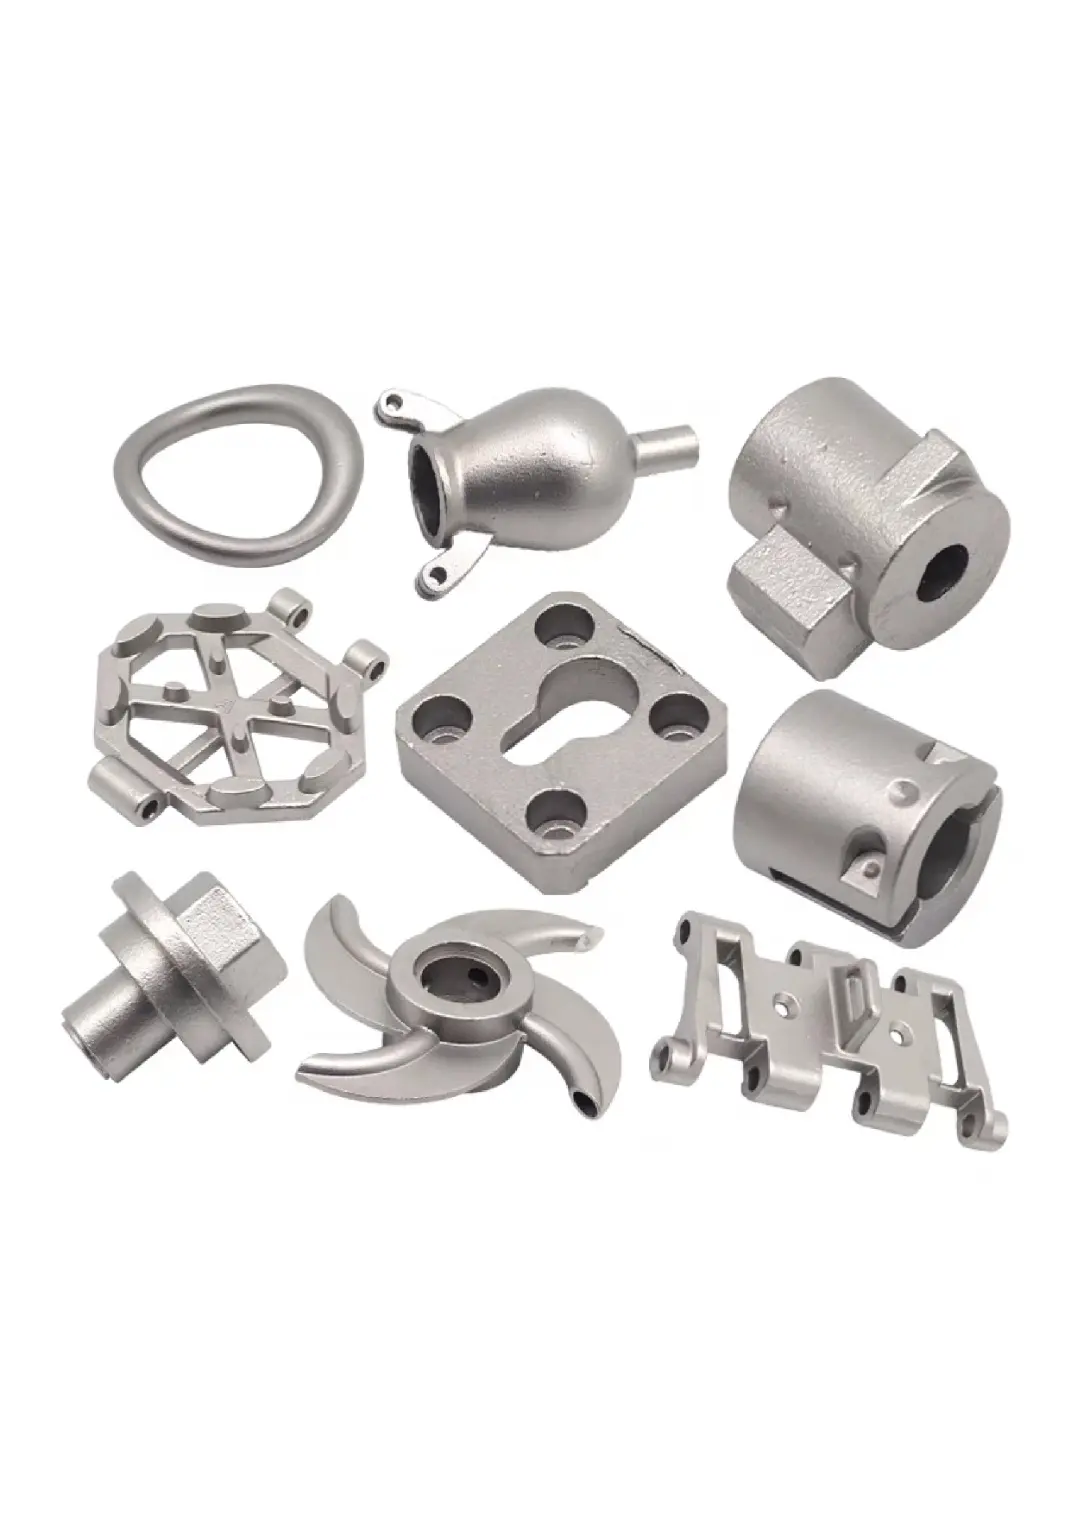 OEM-Fabrik Metallteil Individuelles Metallguss-Herstellungsform für Druckguss Aluminiumteile für Maschine